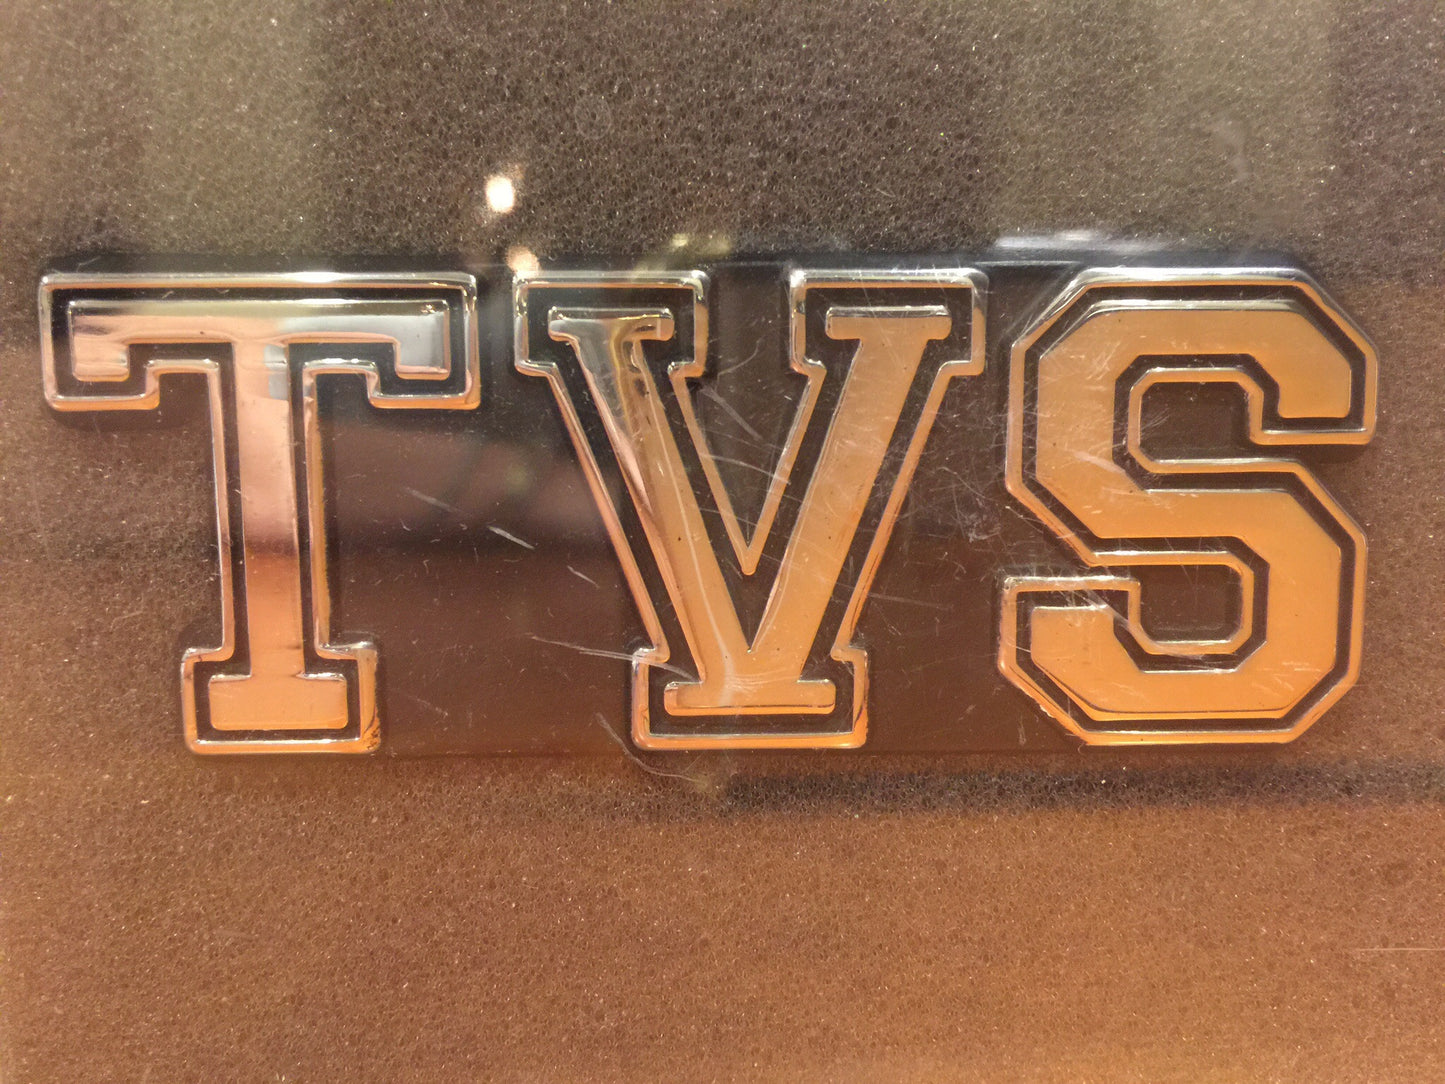 TVS Car Decal